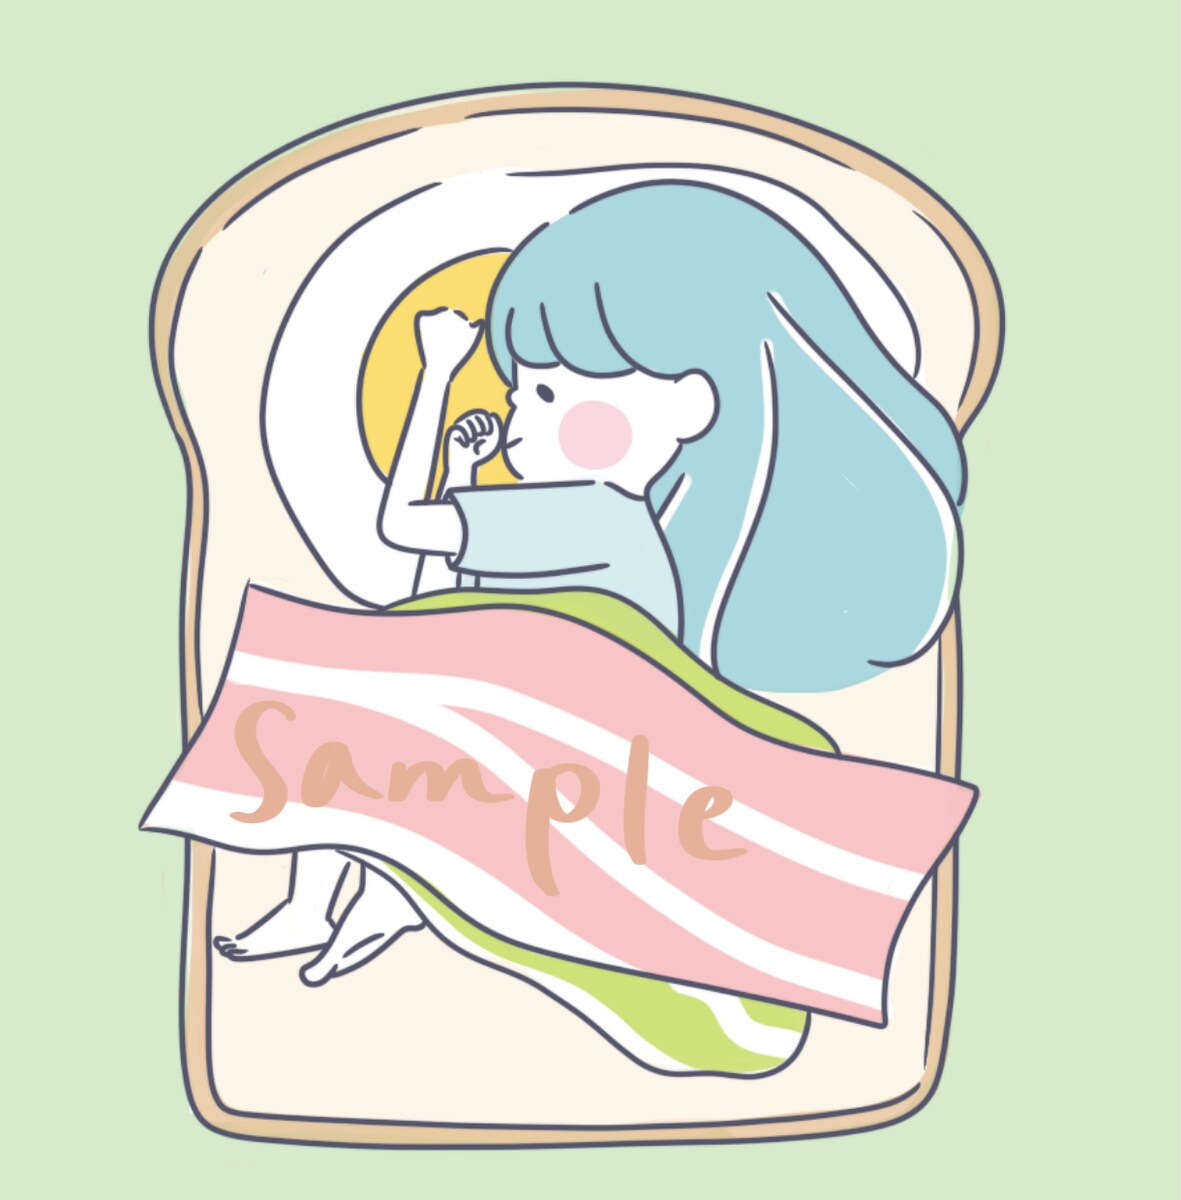 サンドイッチで昼寝